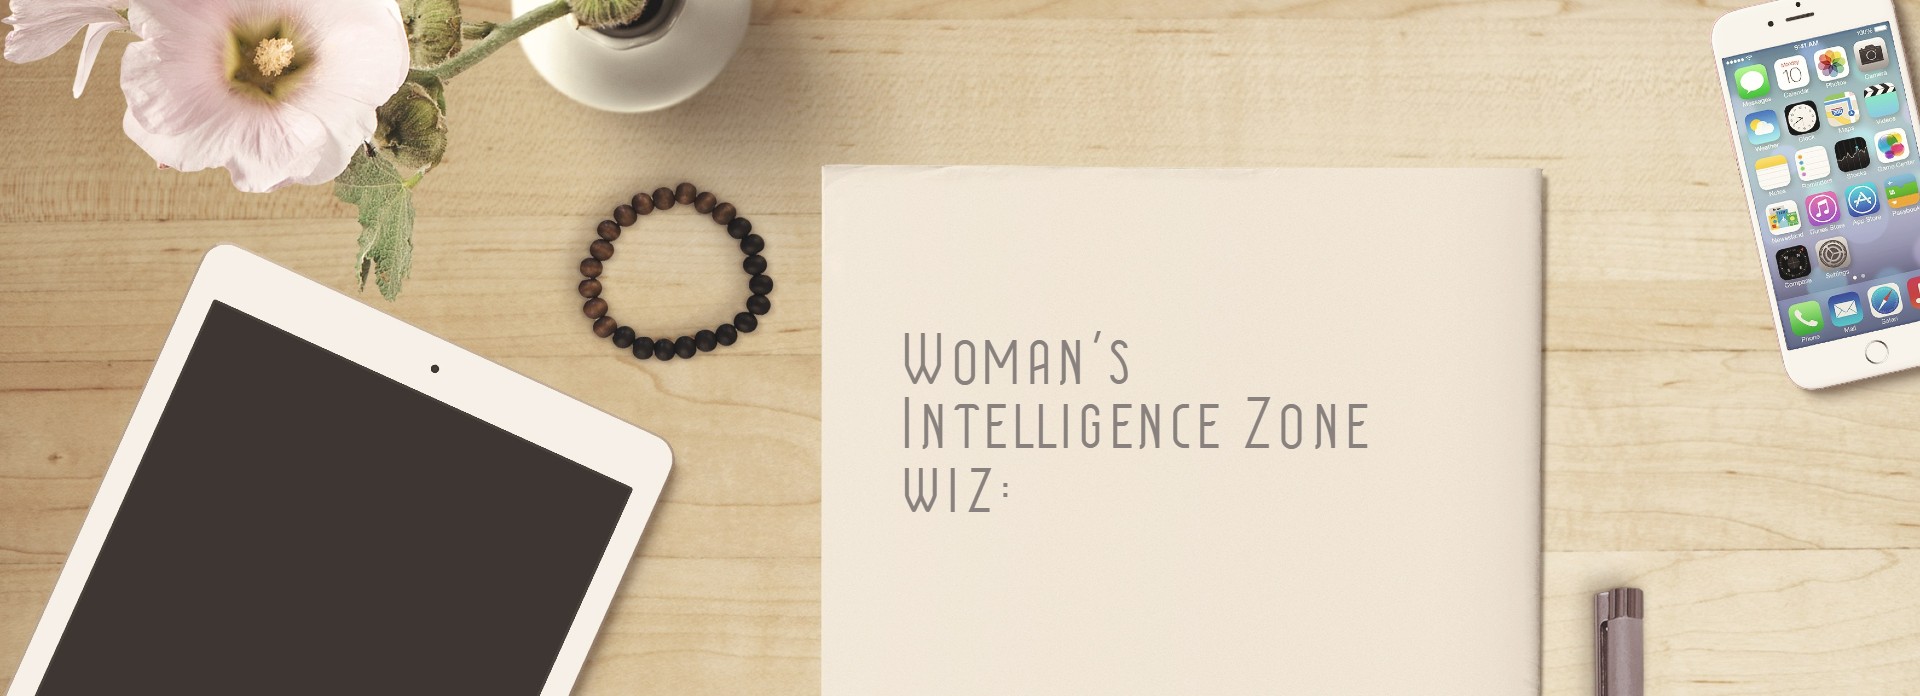 【2020.11.22】女性起業家支援のwiz:チャレンジショップ in Casaのオープニングイベント開催！